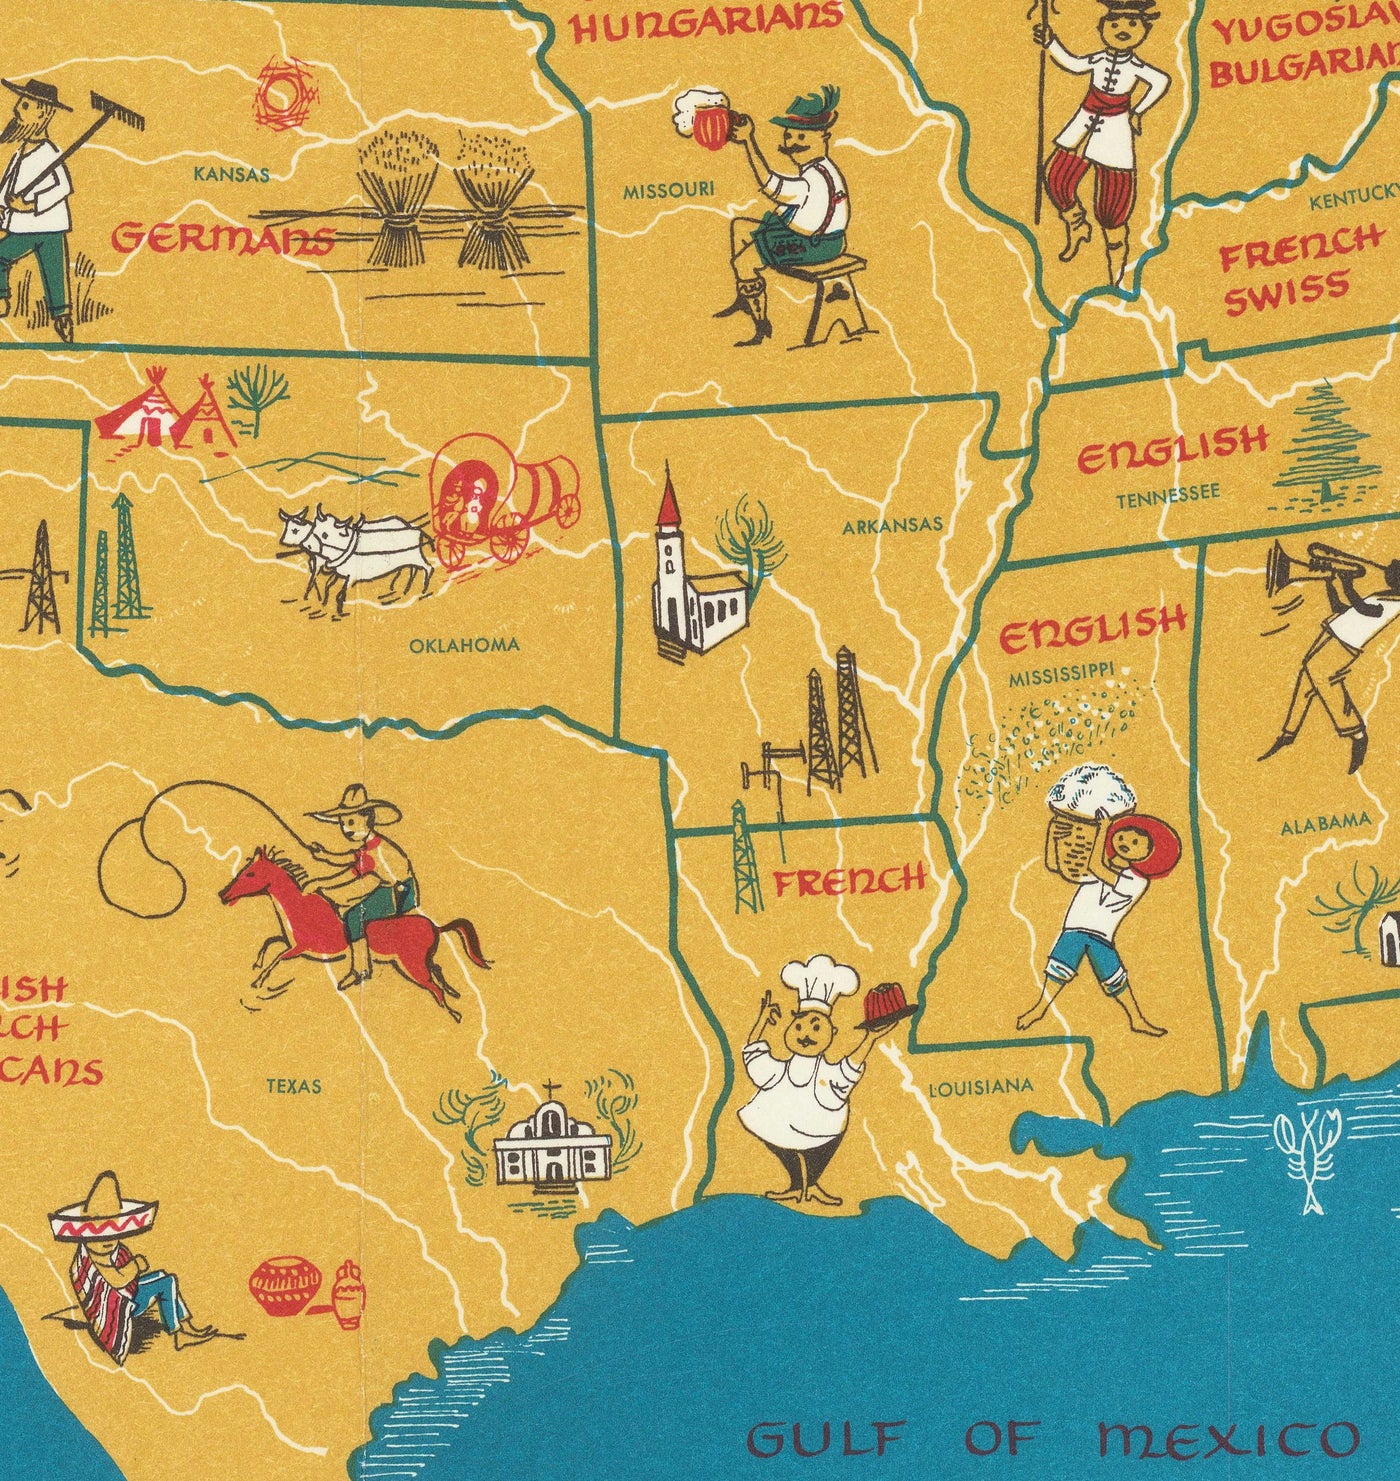 Ancienne carte d'immigrants des États-Unis, 1959 par Passal - Irlandais, Italien, Russe, Anglais, Allemand, Espagnol, Mexicain, Chinois